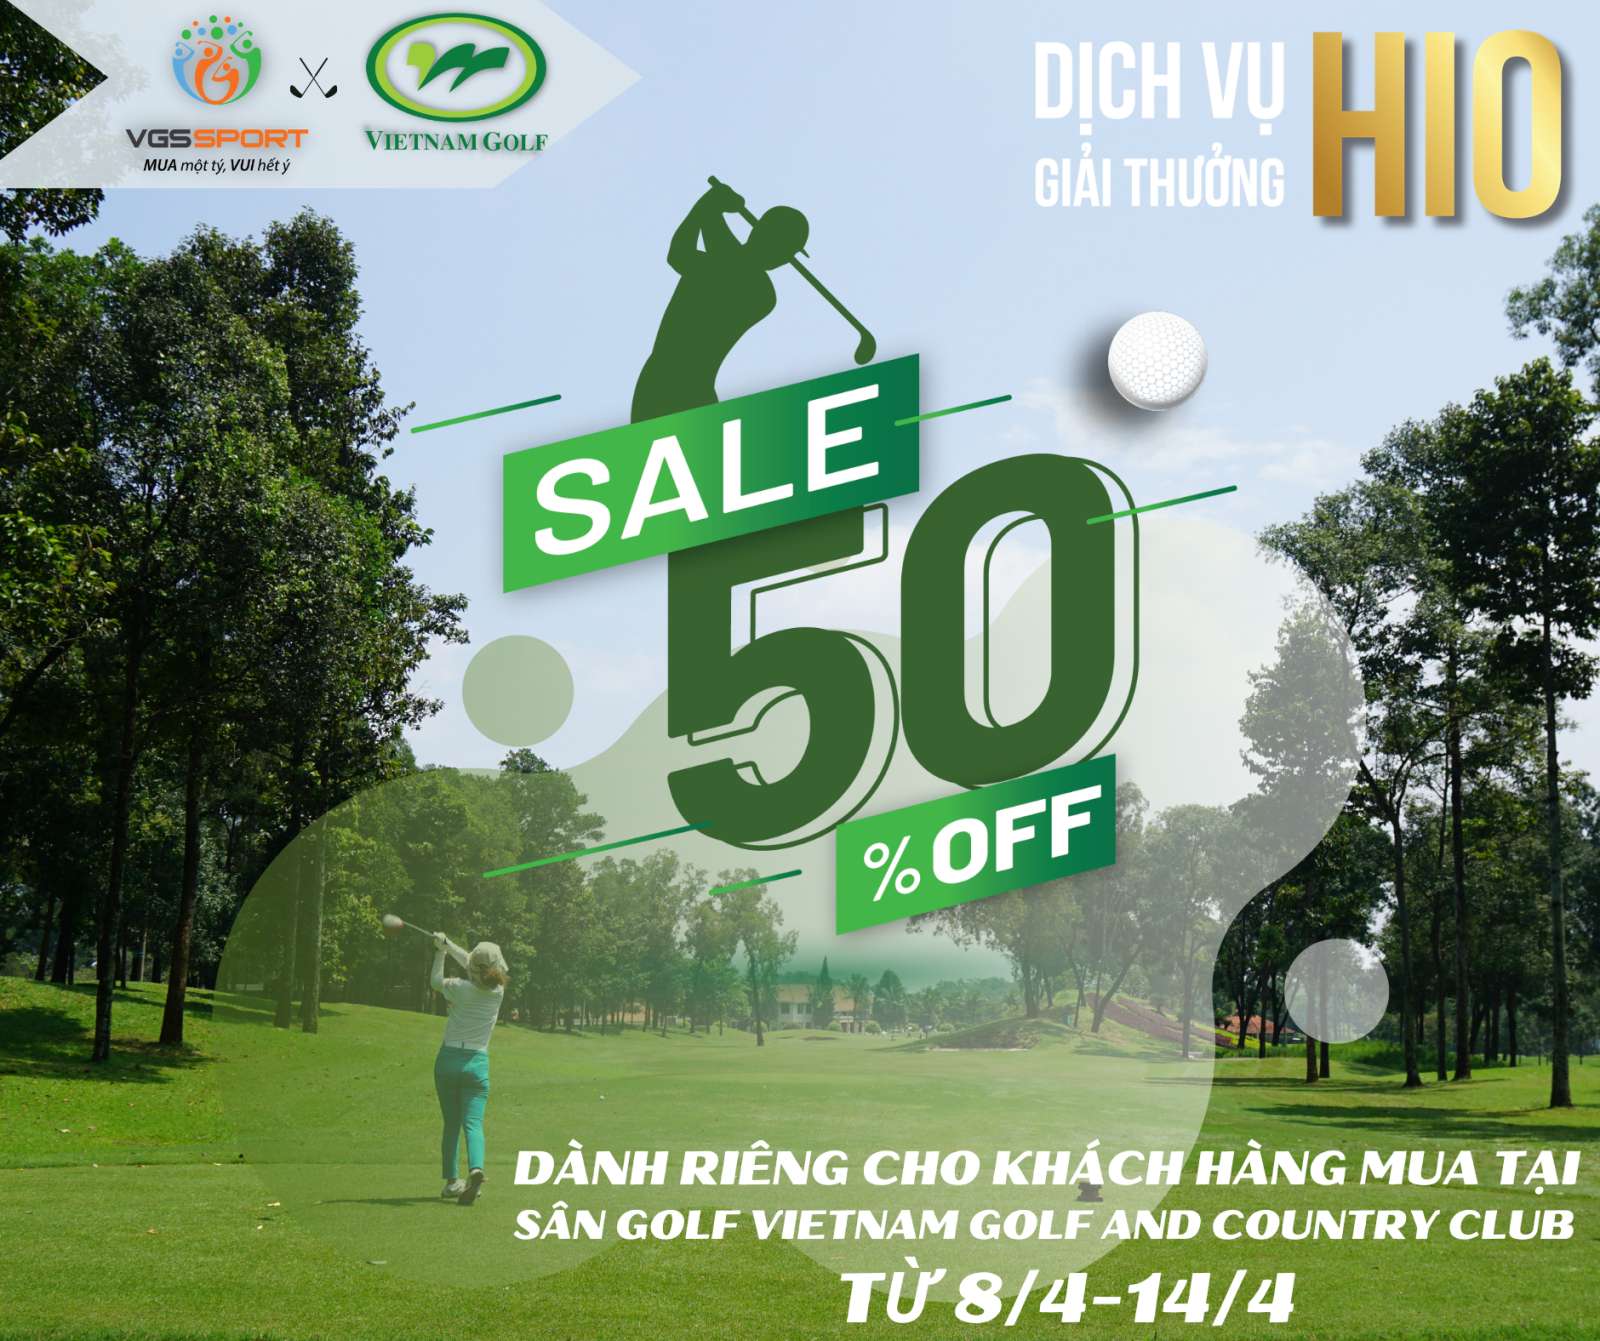 Vietnam Golf & Country Club trở thành sân golf tiếp theo triển khai chương trình khuyến mãi của VGS Sport